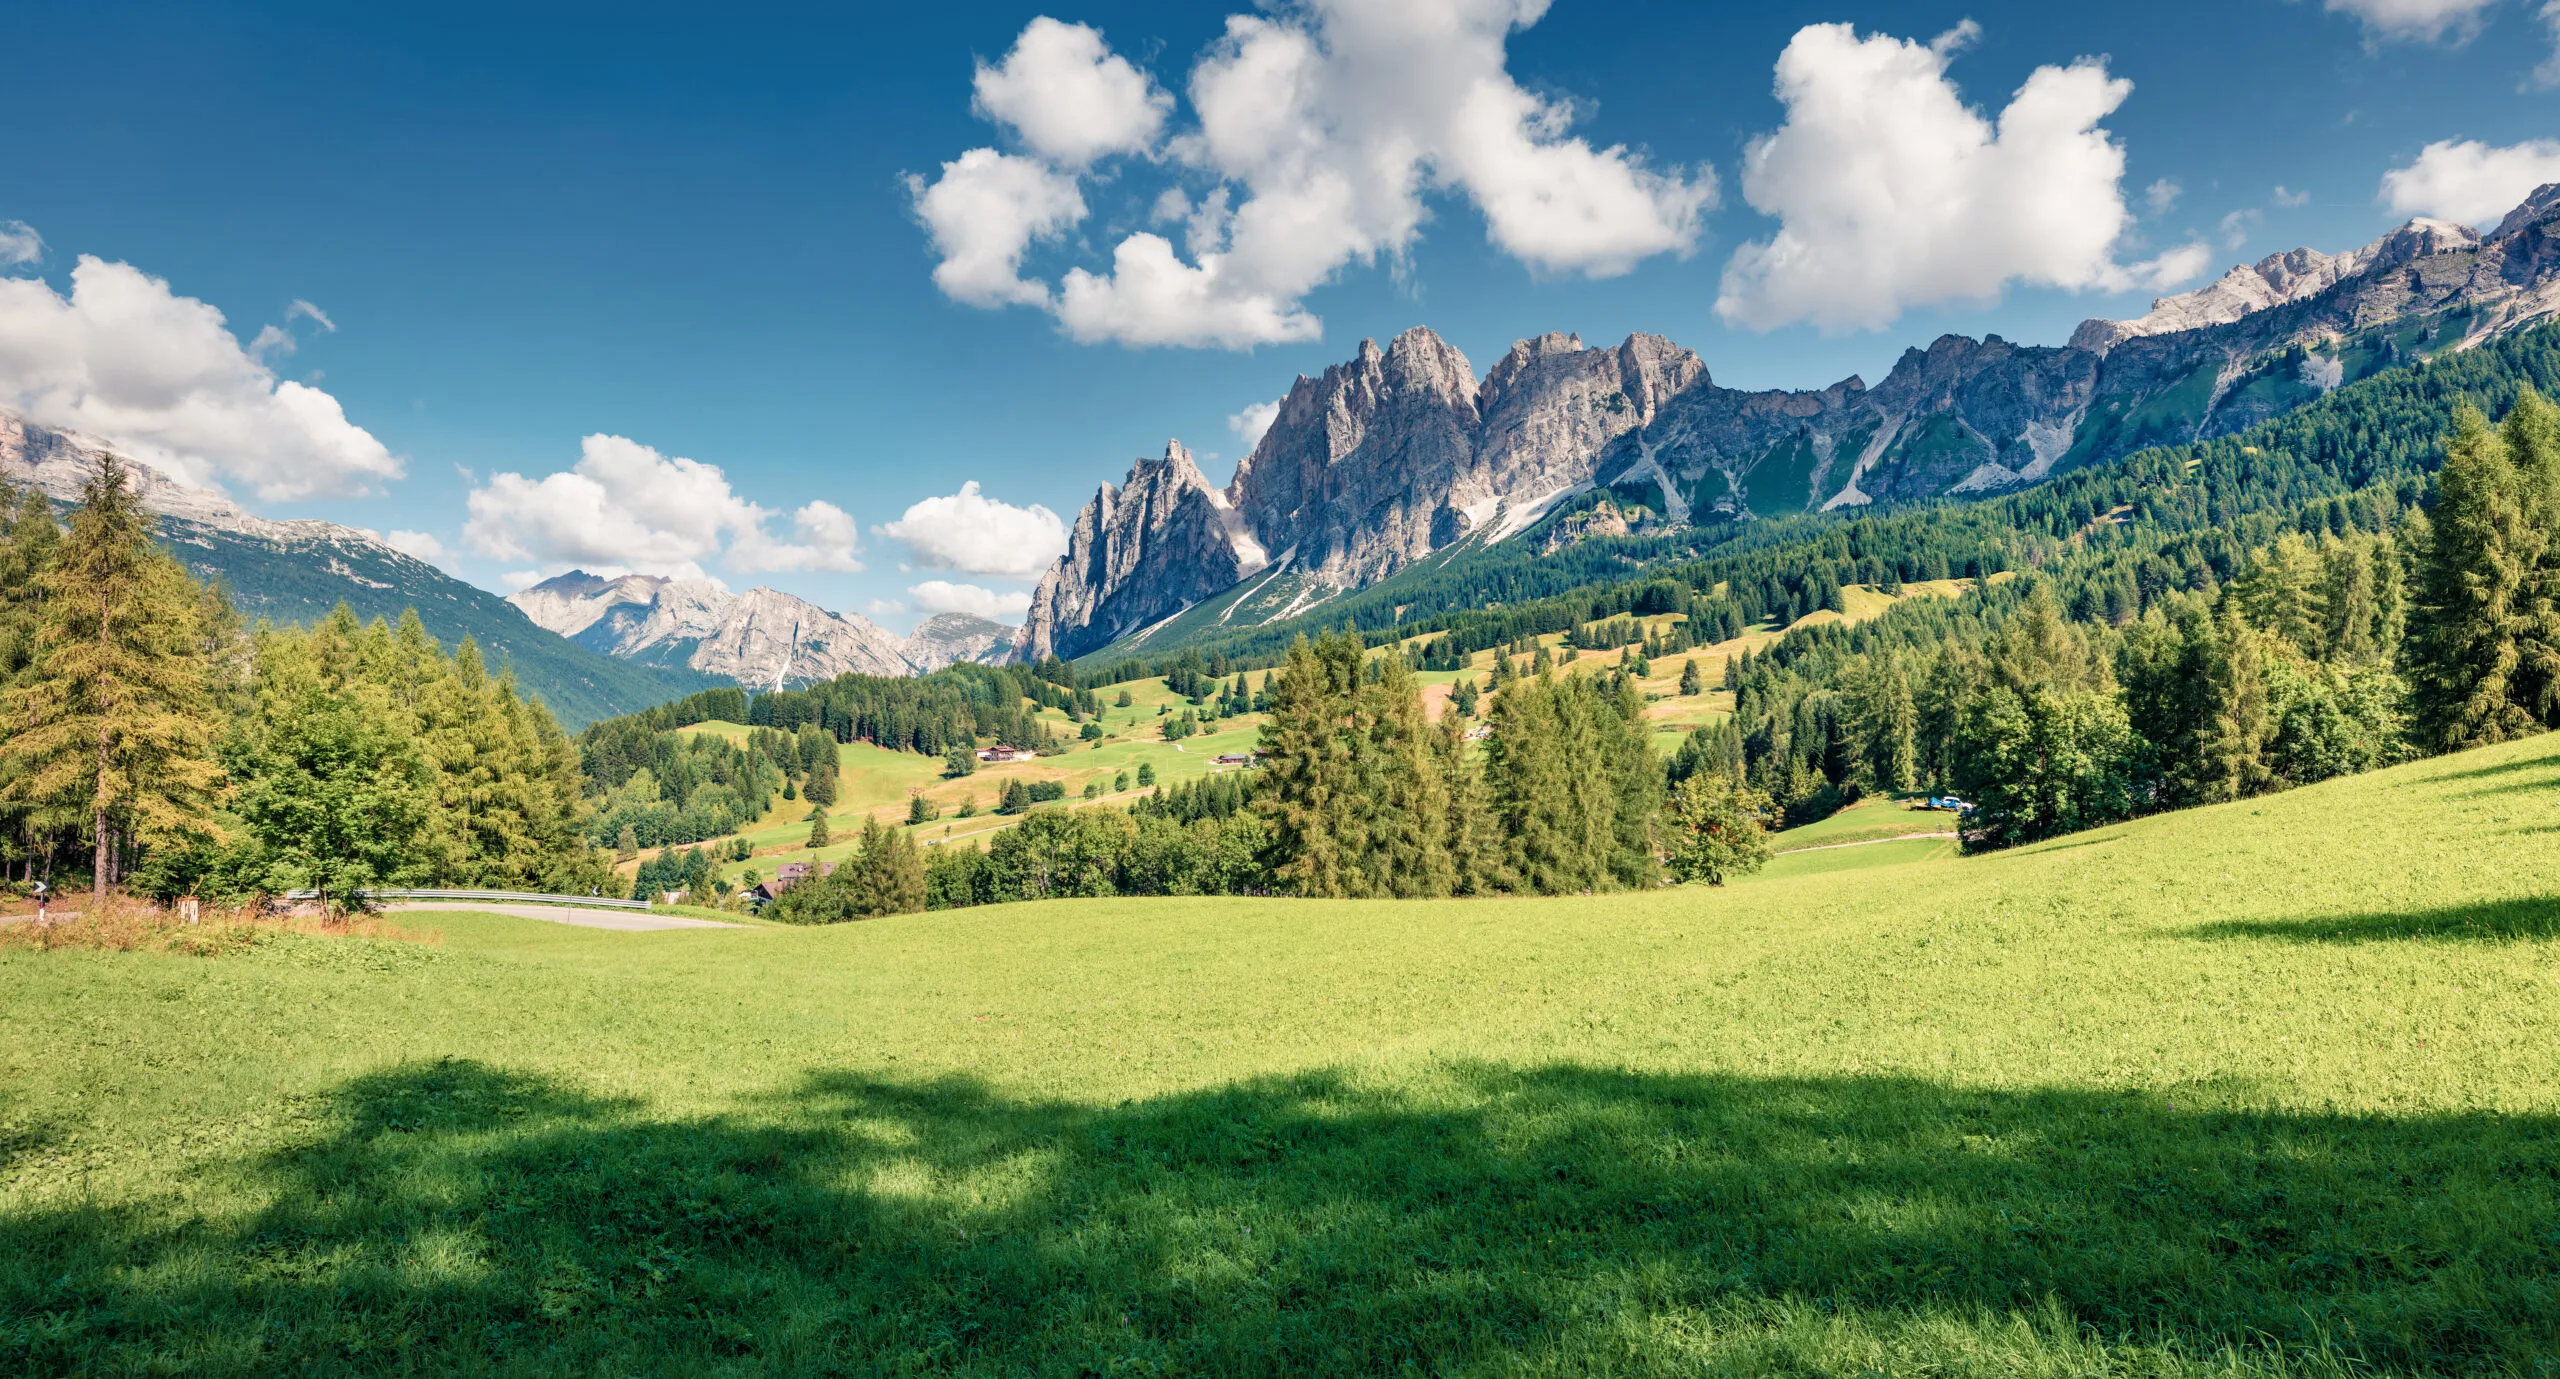 Vue matinale ensoleillée de la station de Cortina d'Ampezzo. Scène estivale lumineuse dans les Alpes Dolomiti, province de Belluno, Italie, Europe. Beauté de la campagne en arrière-plan.